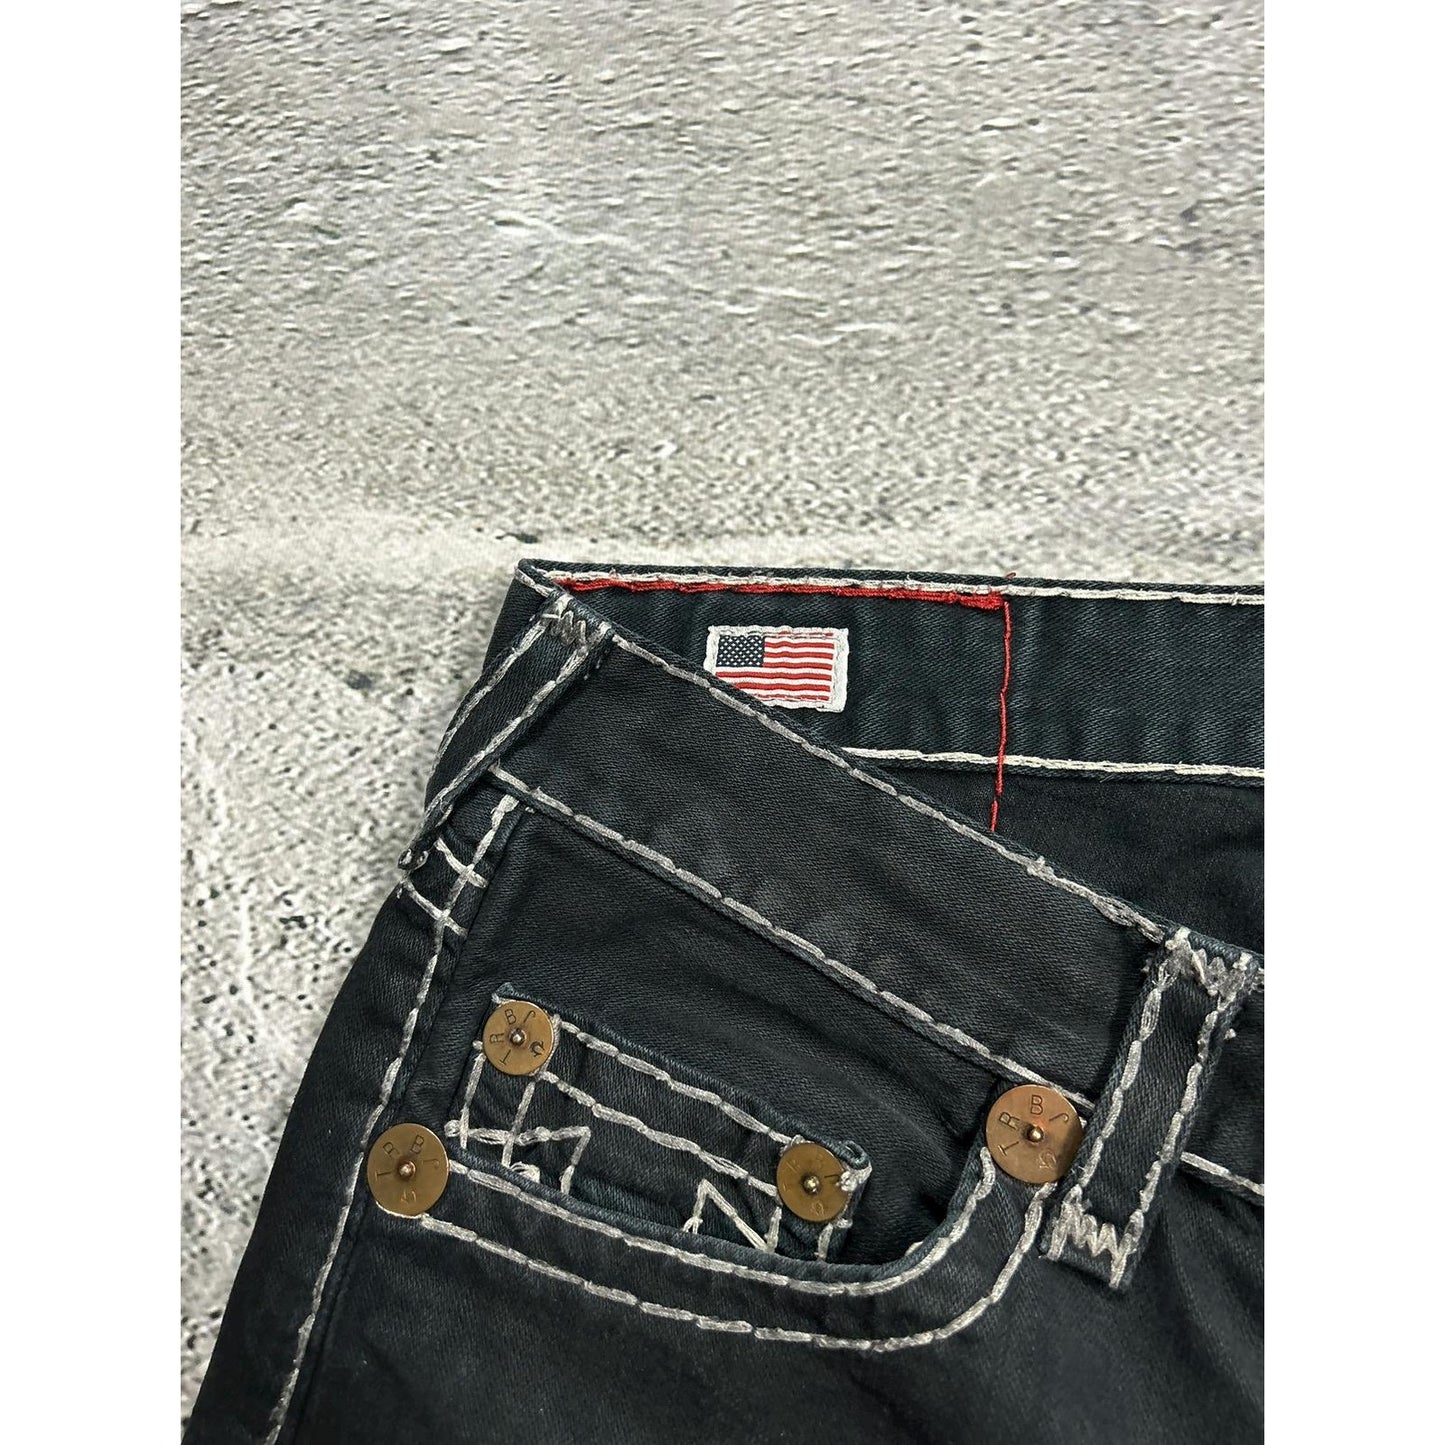 True Religion vintage black jeans denim white stitching